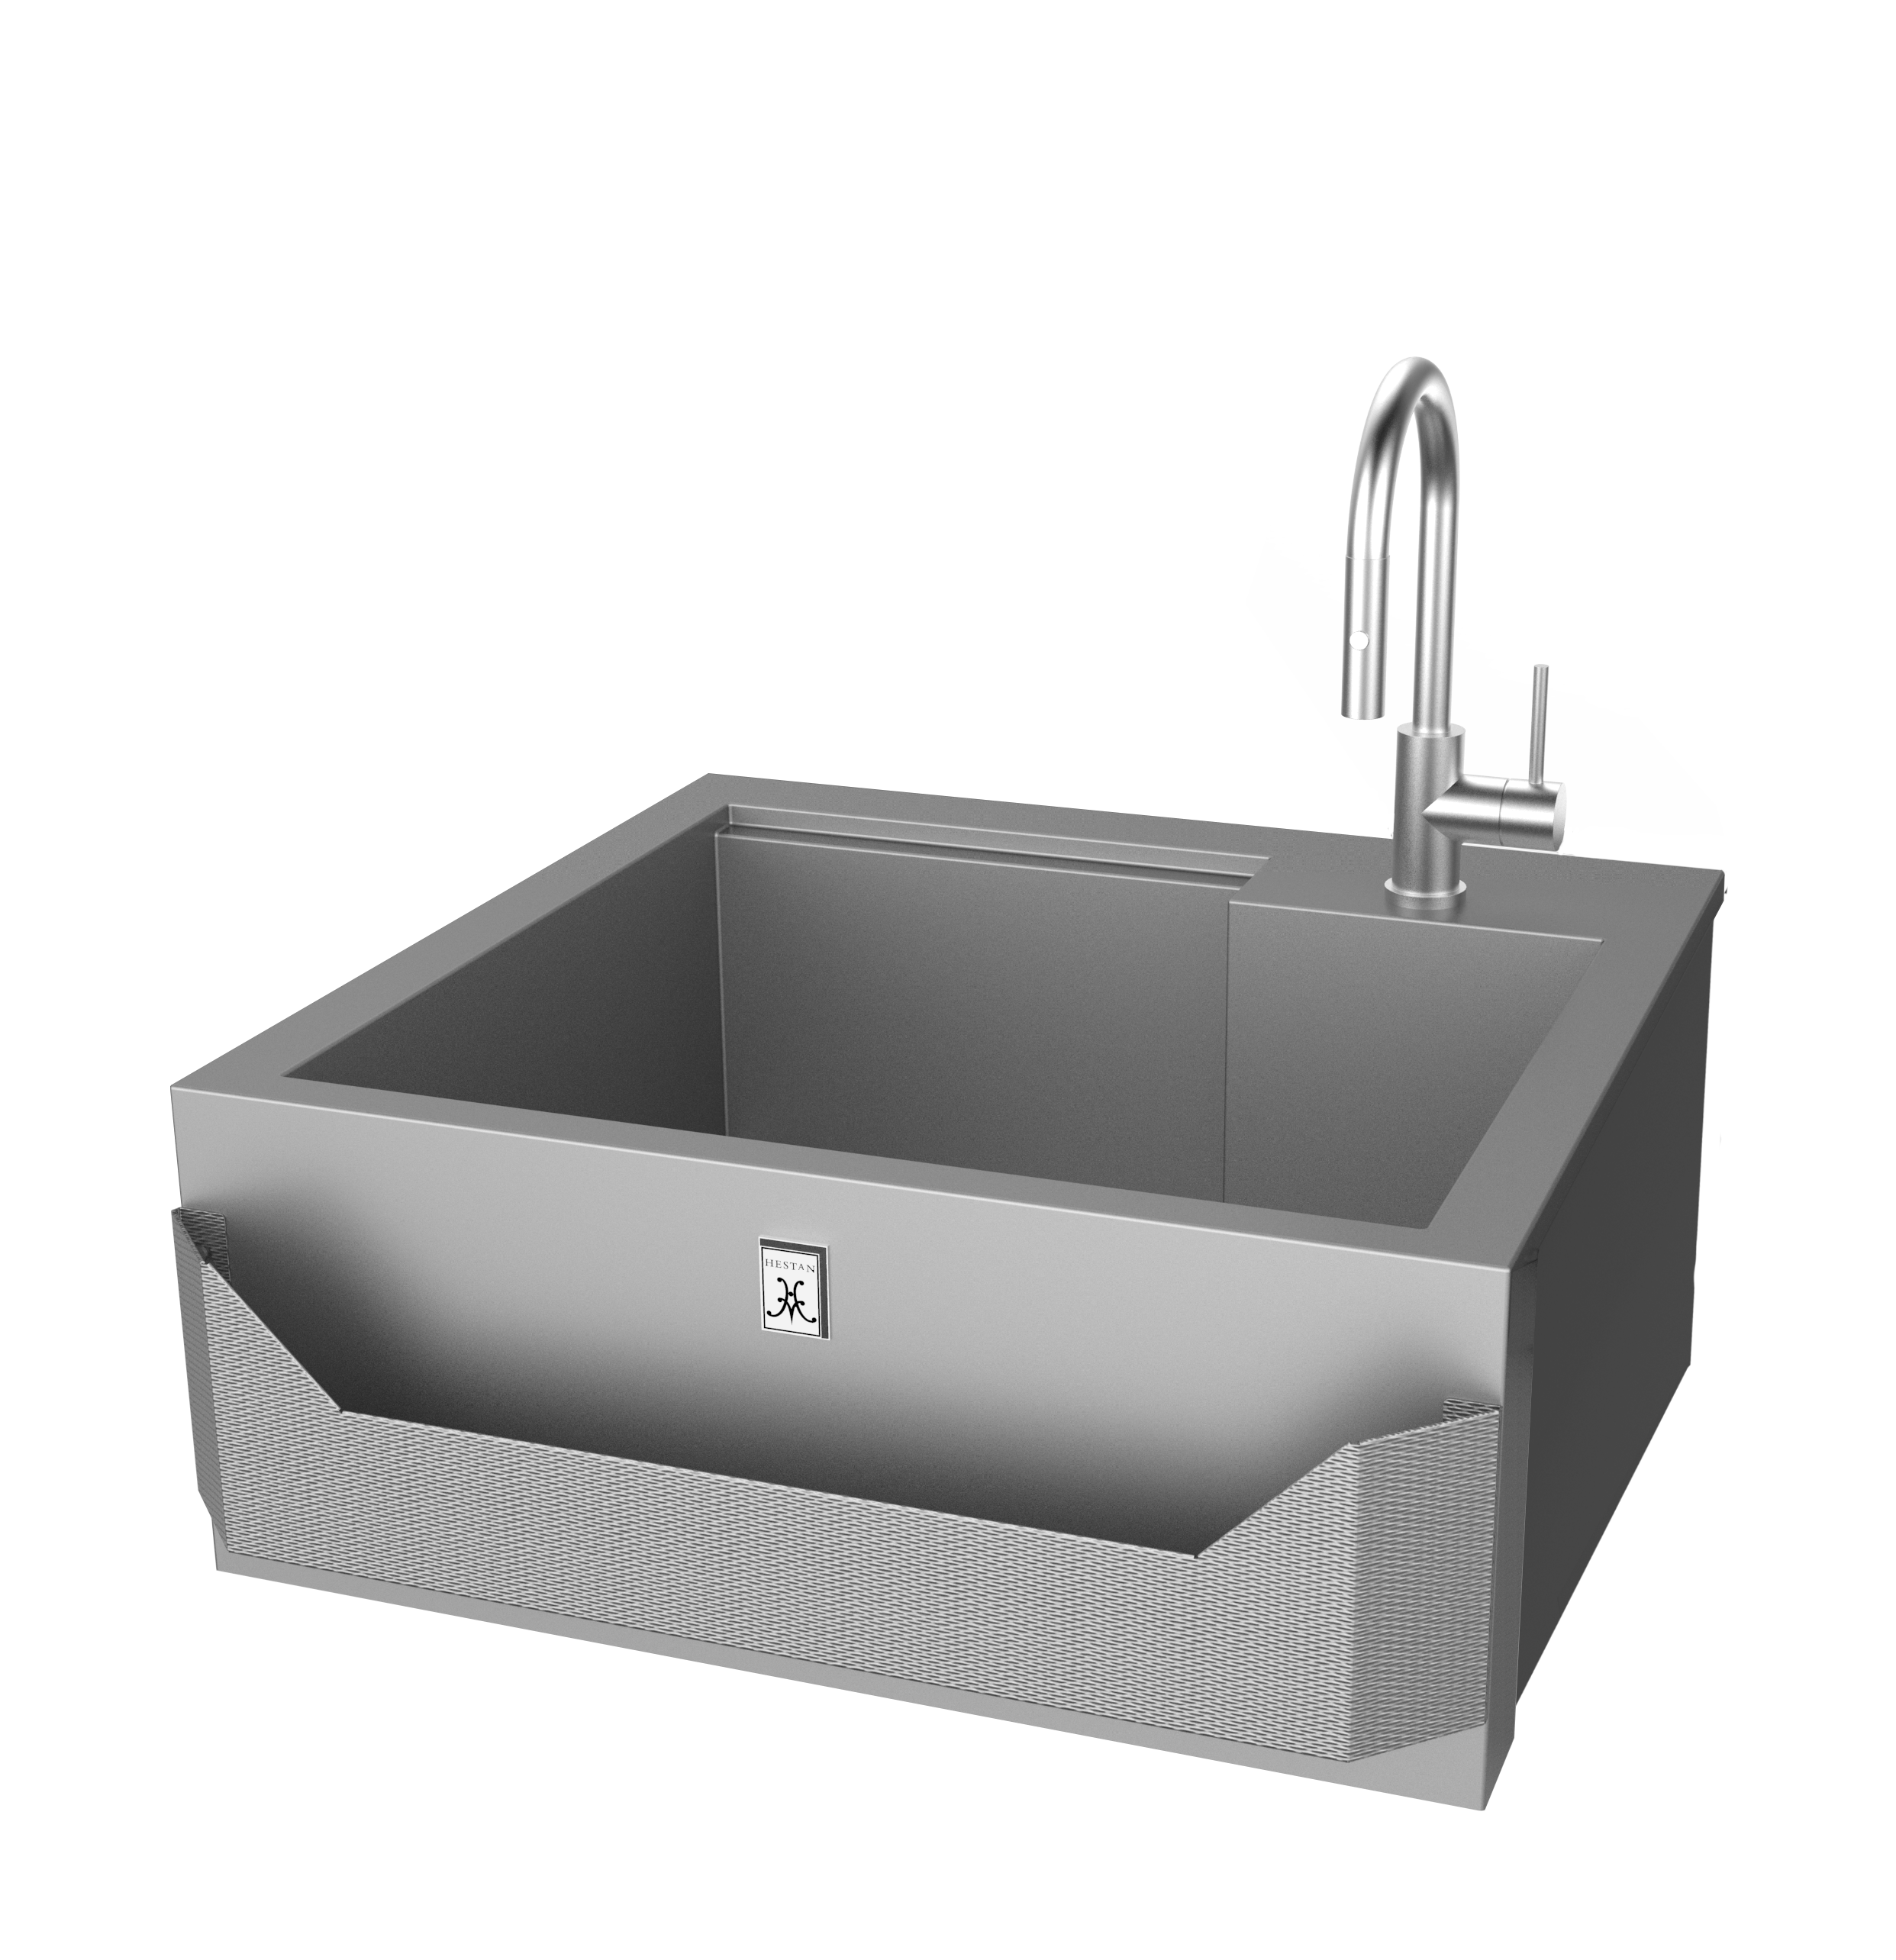 30″ Hestan Outdoor Insulated Sink